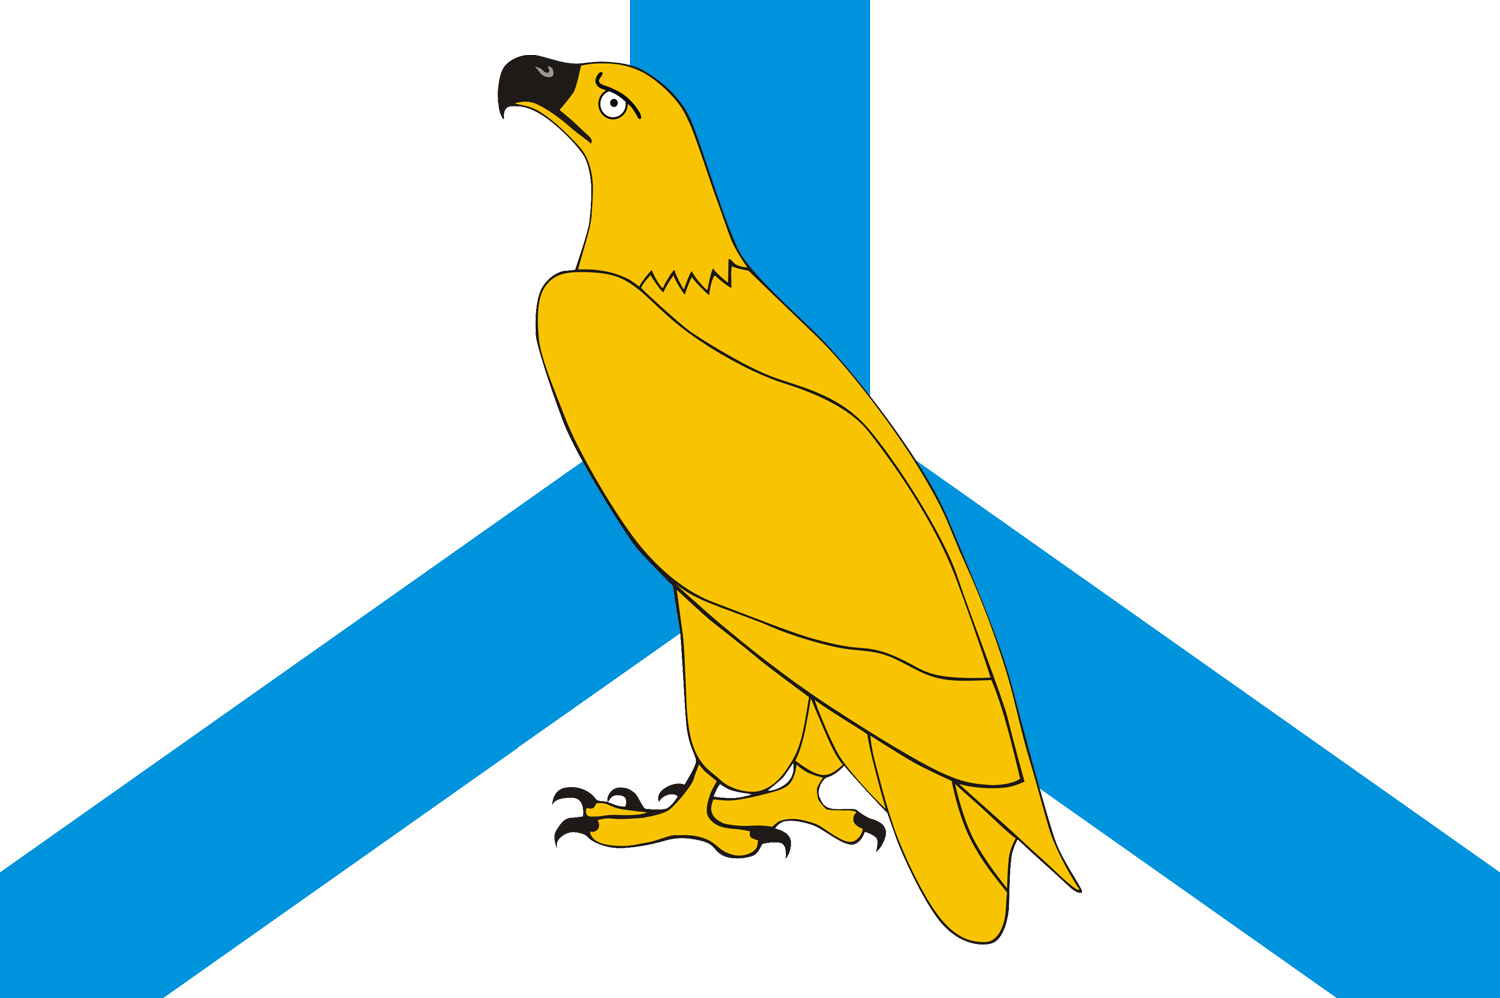 Флаг города Дальнереченска Приморского края